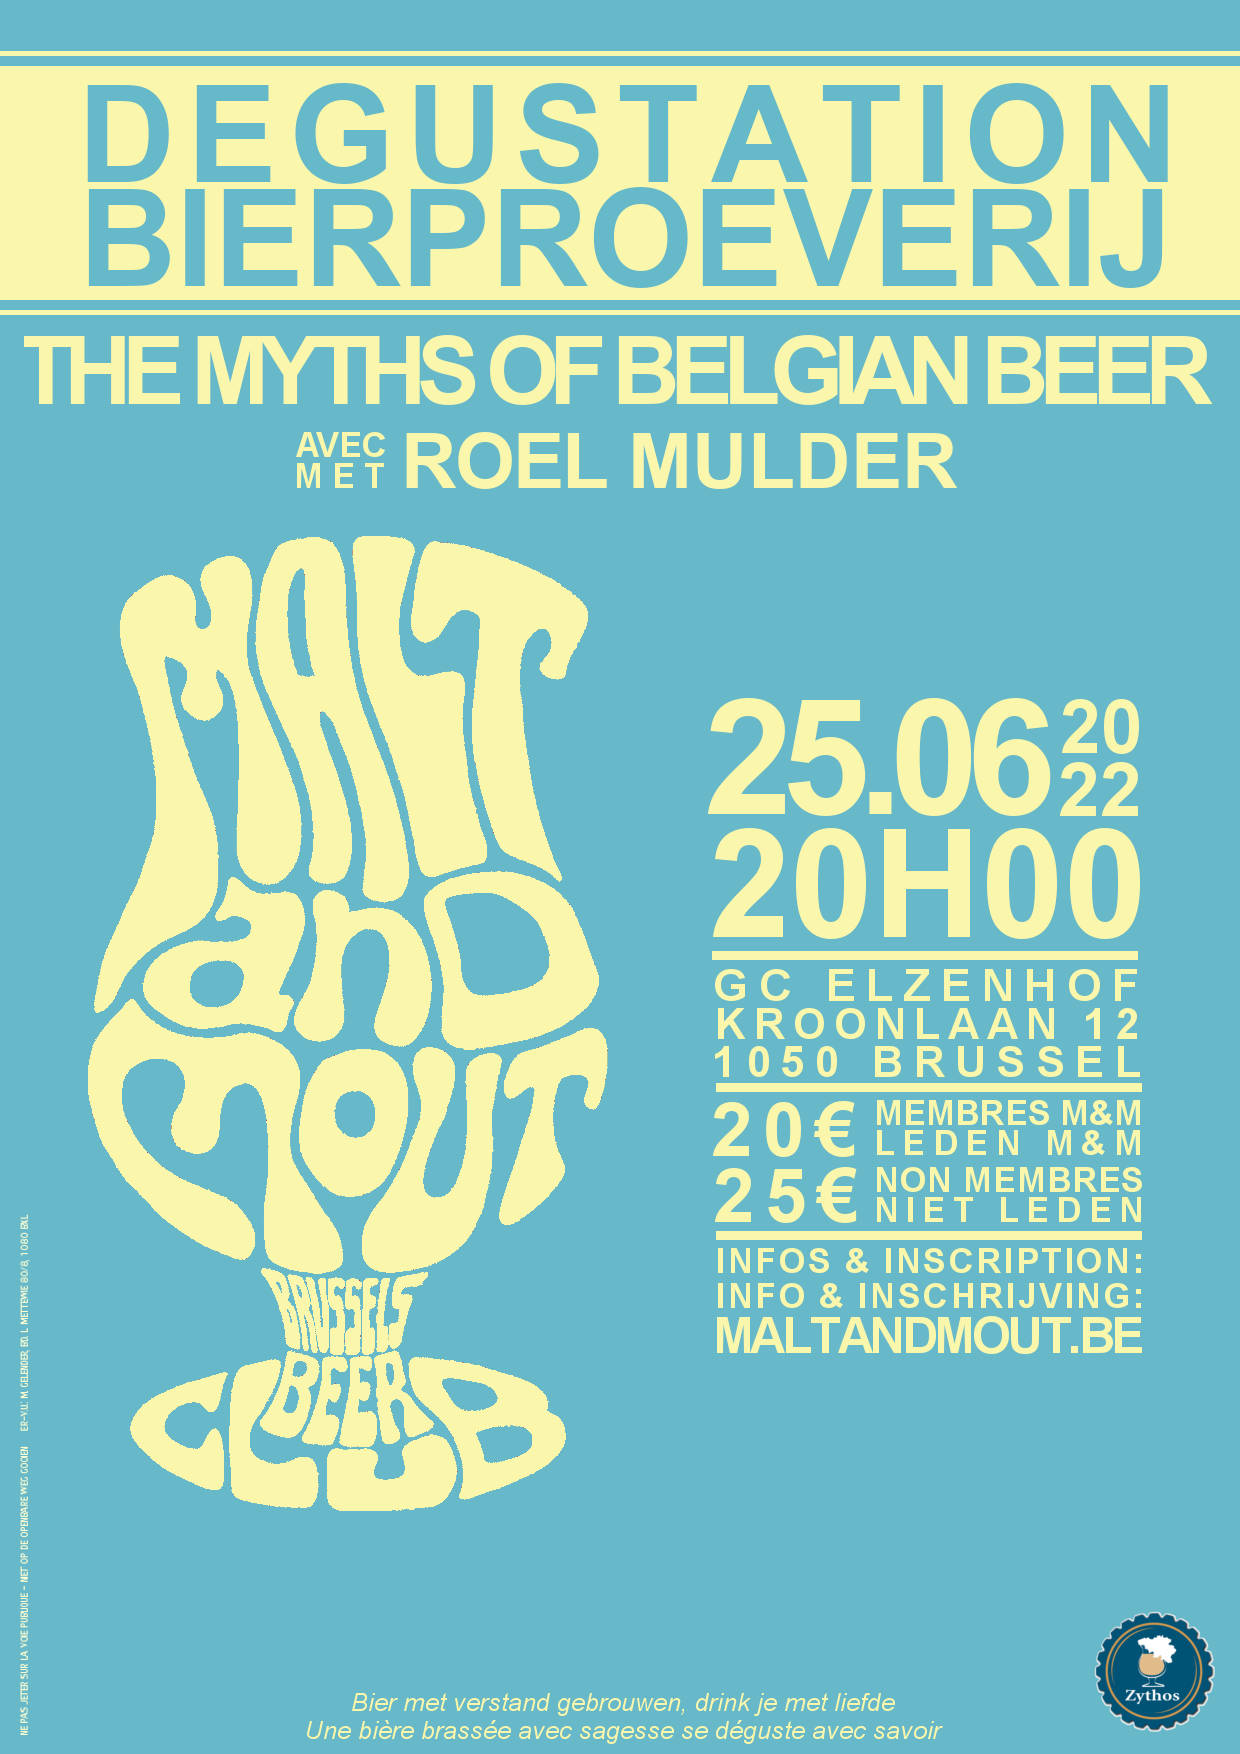 Les mythes de la bière belge